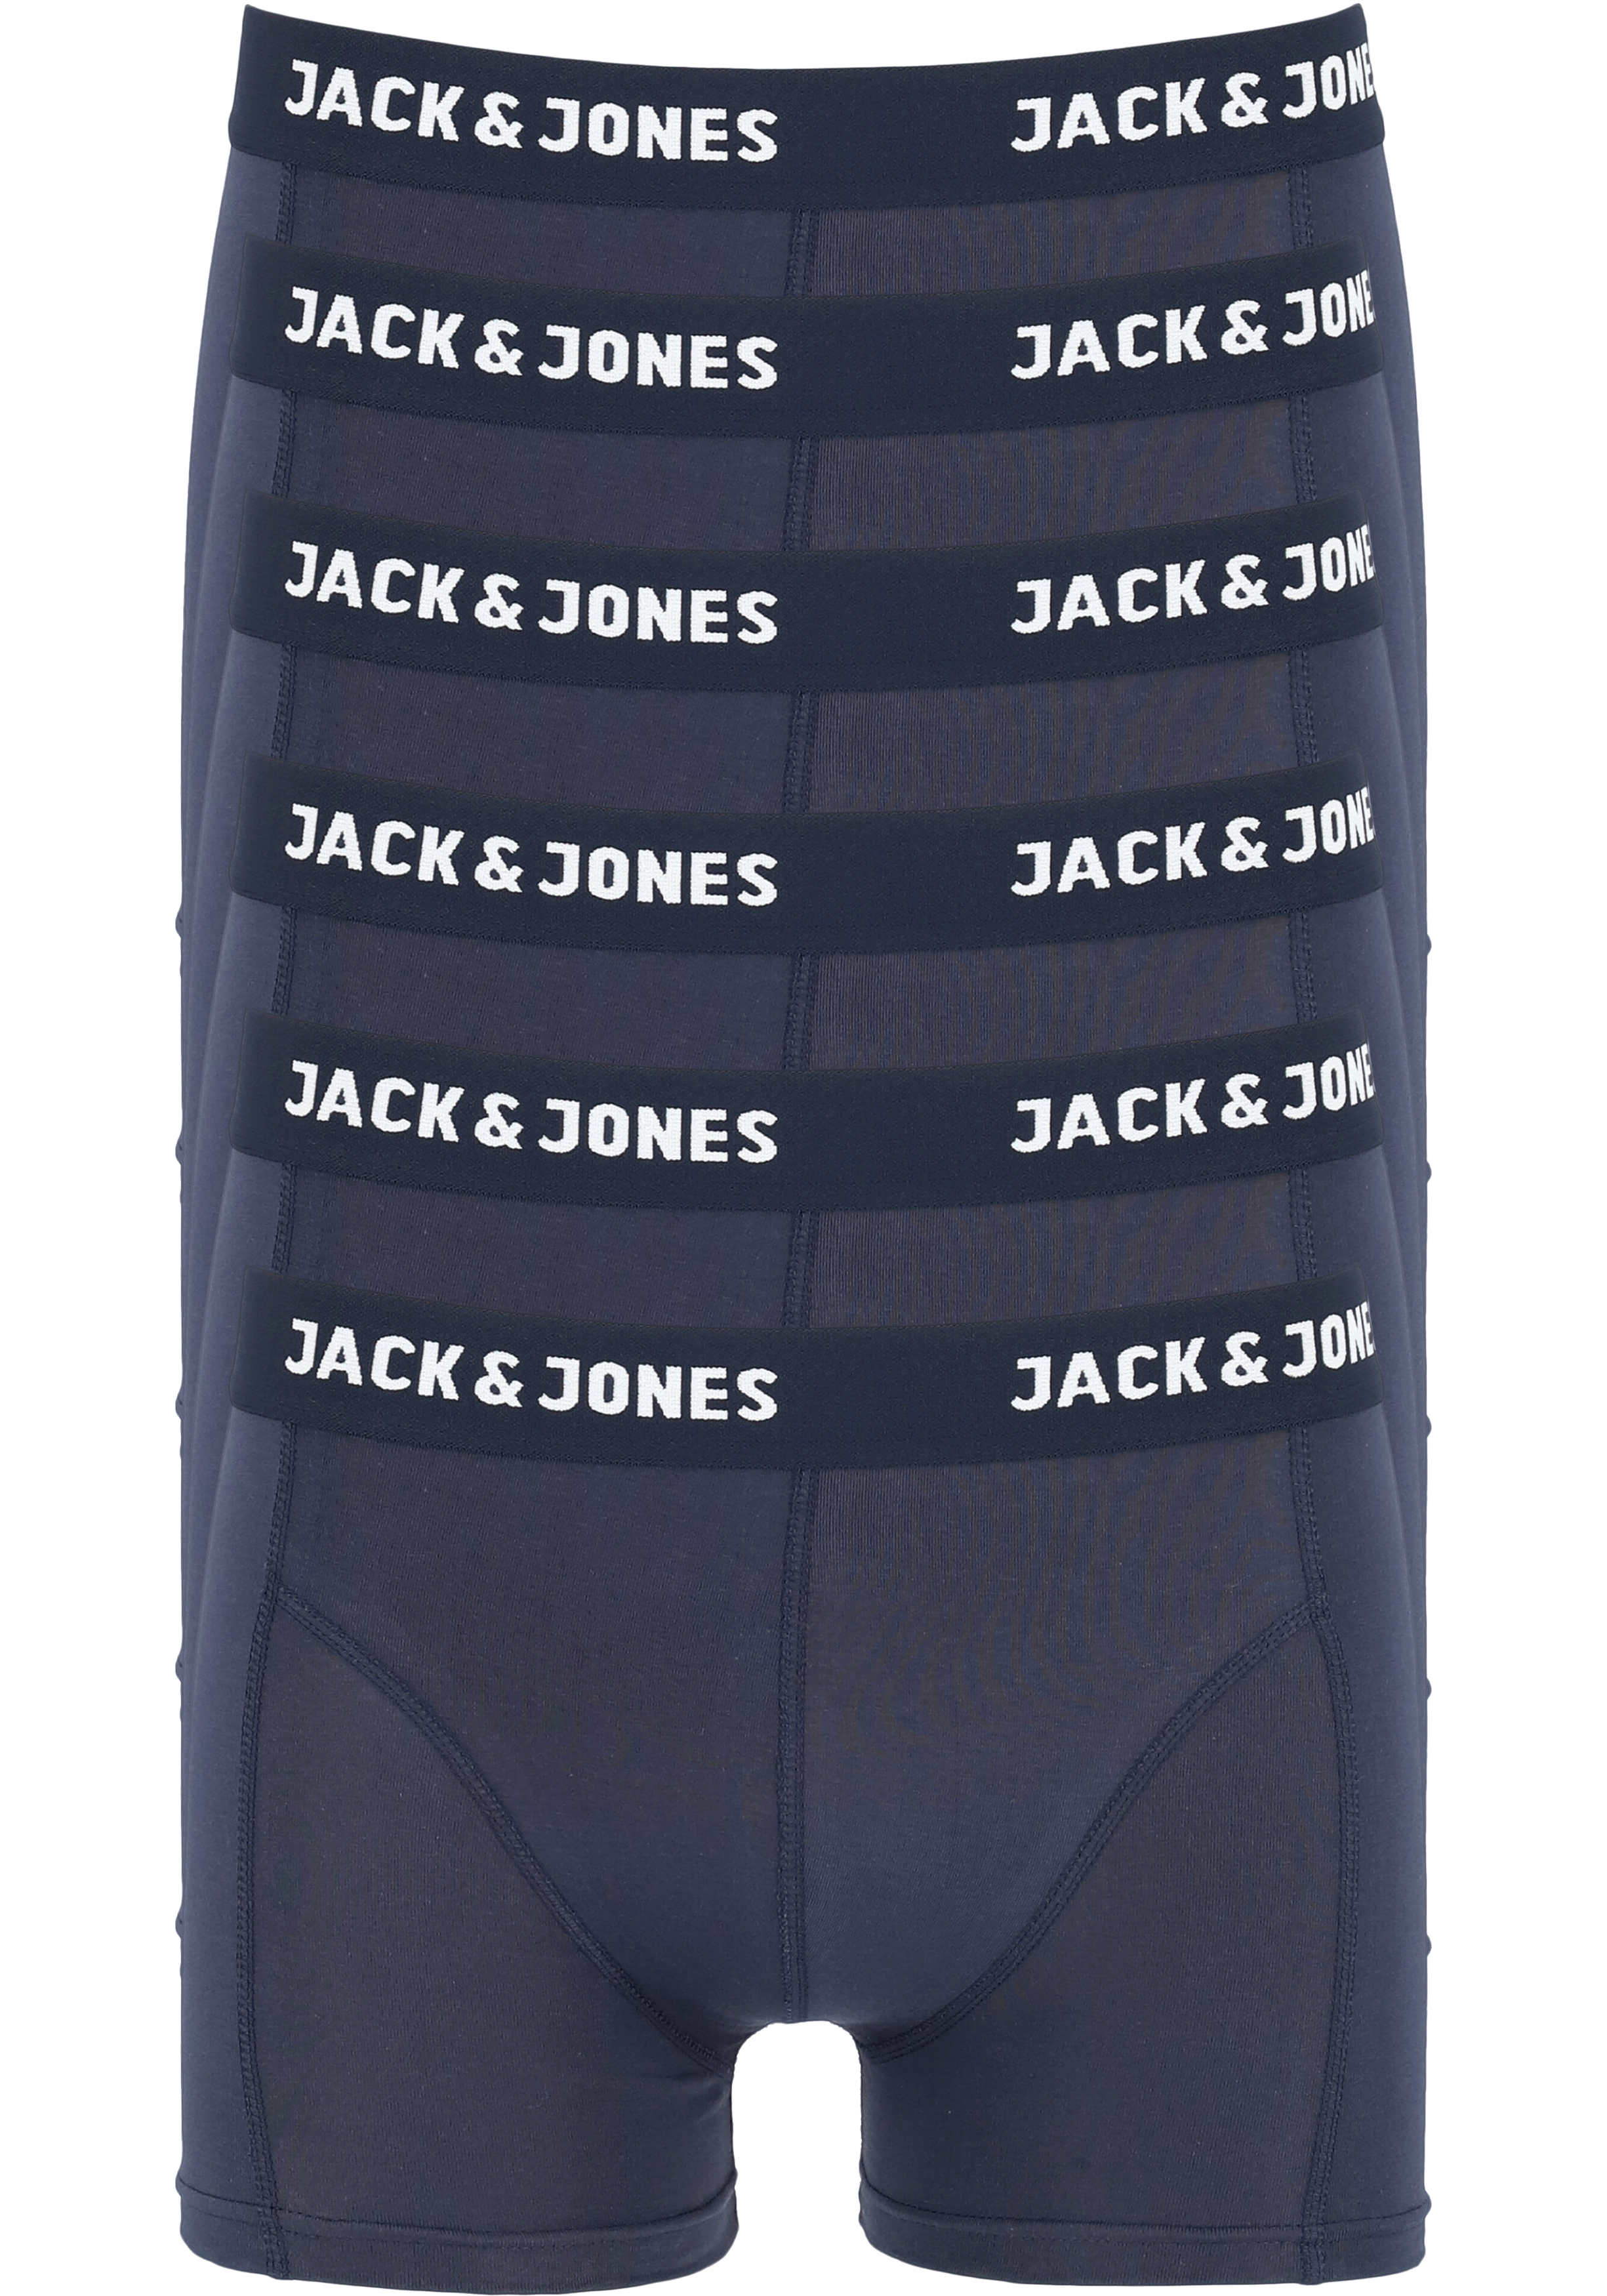 Begrafenis boiler Opmerkelijk JACK & JONES boxers Jacanthony trunks (6-pack), navy blauw - 20%  Paaskorting op (bijna) alles